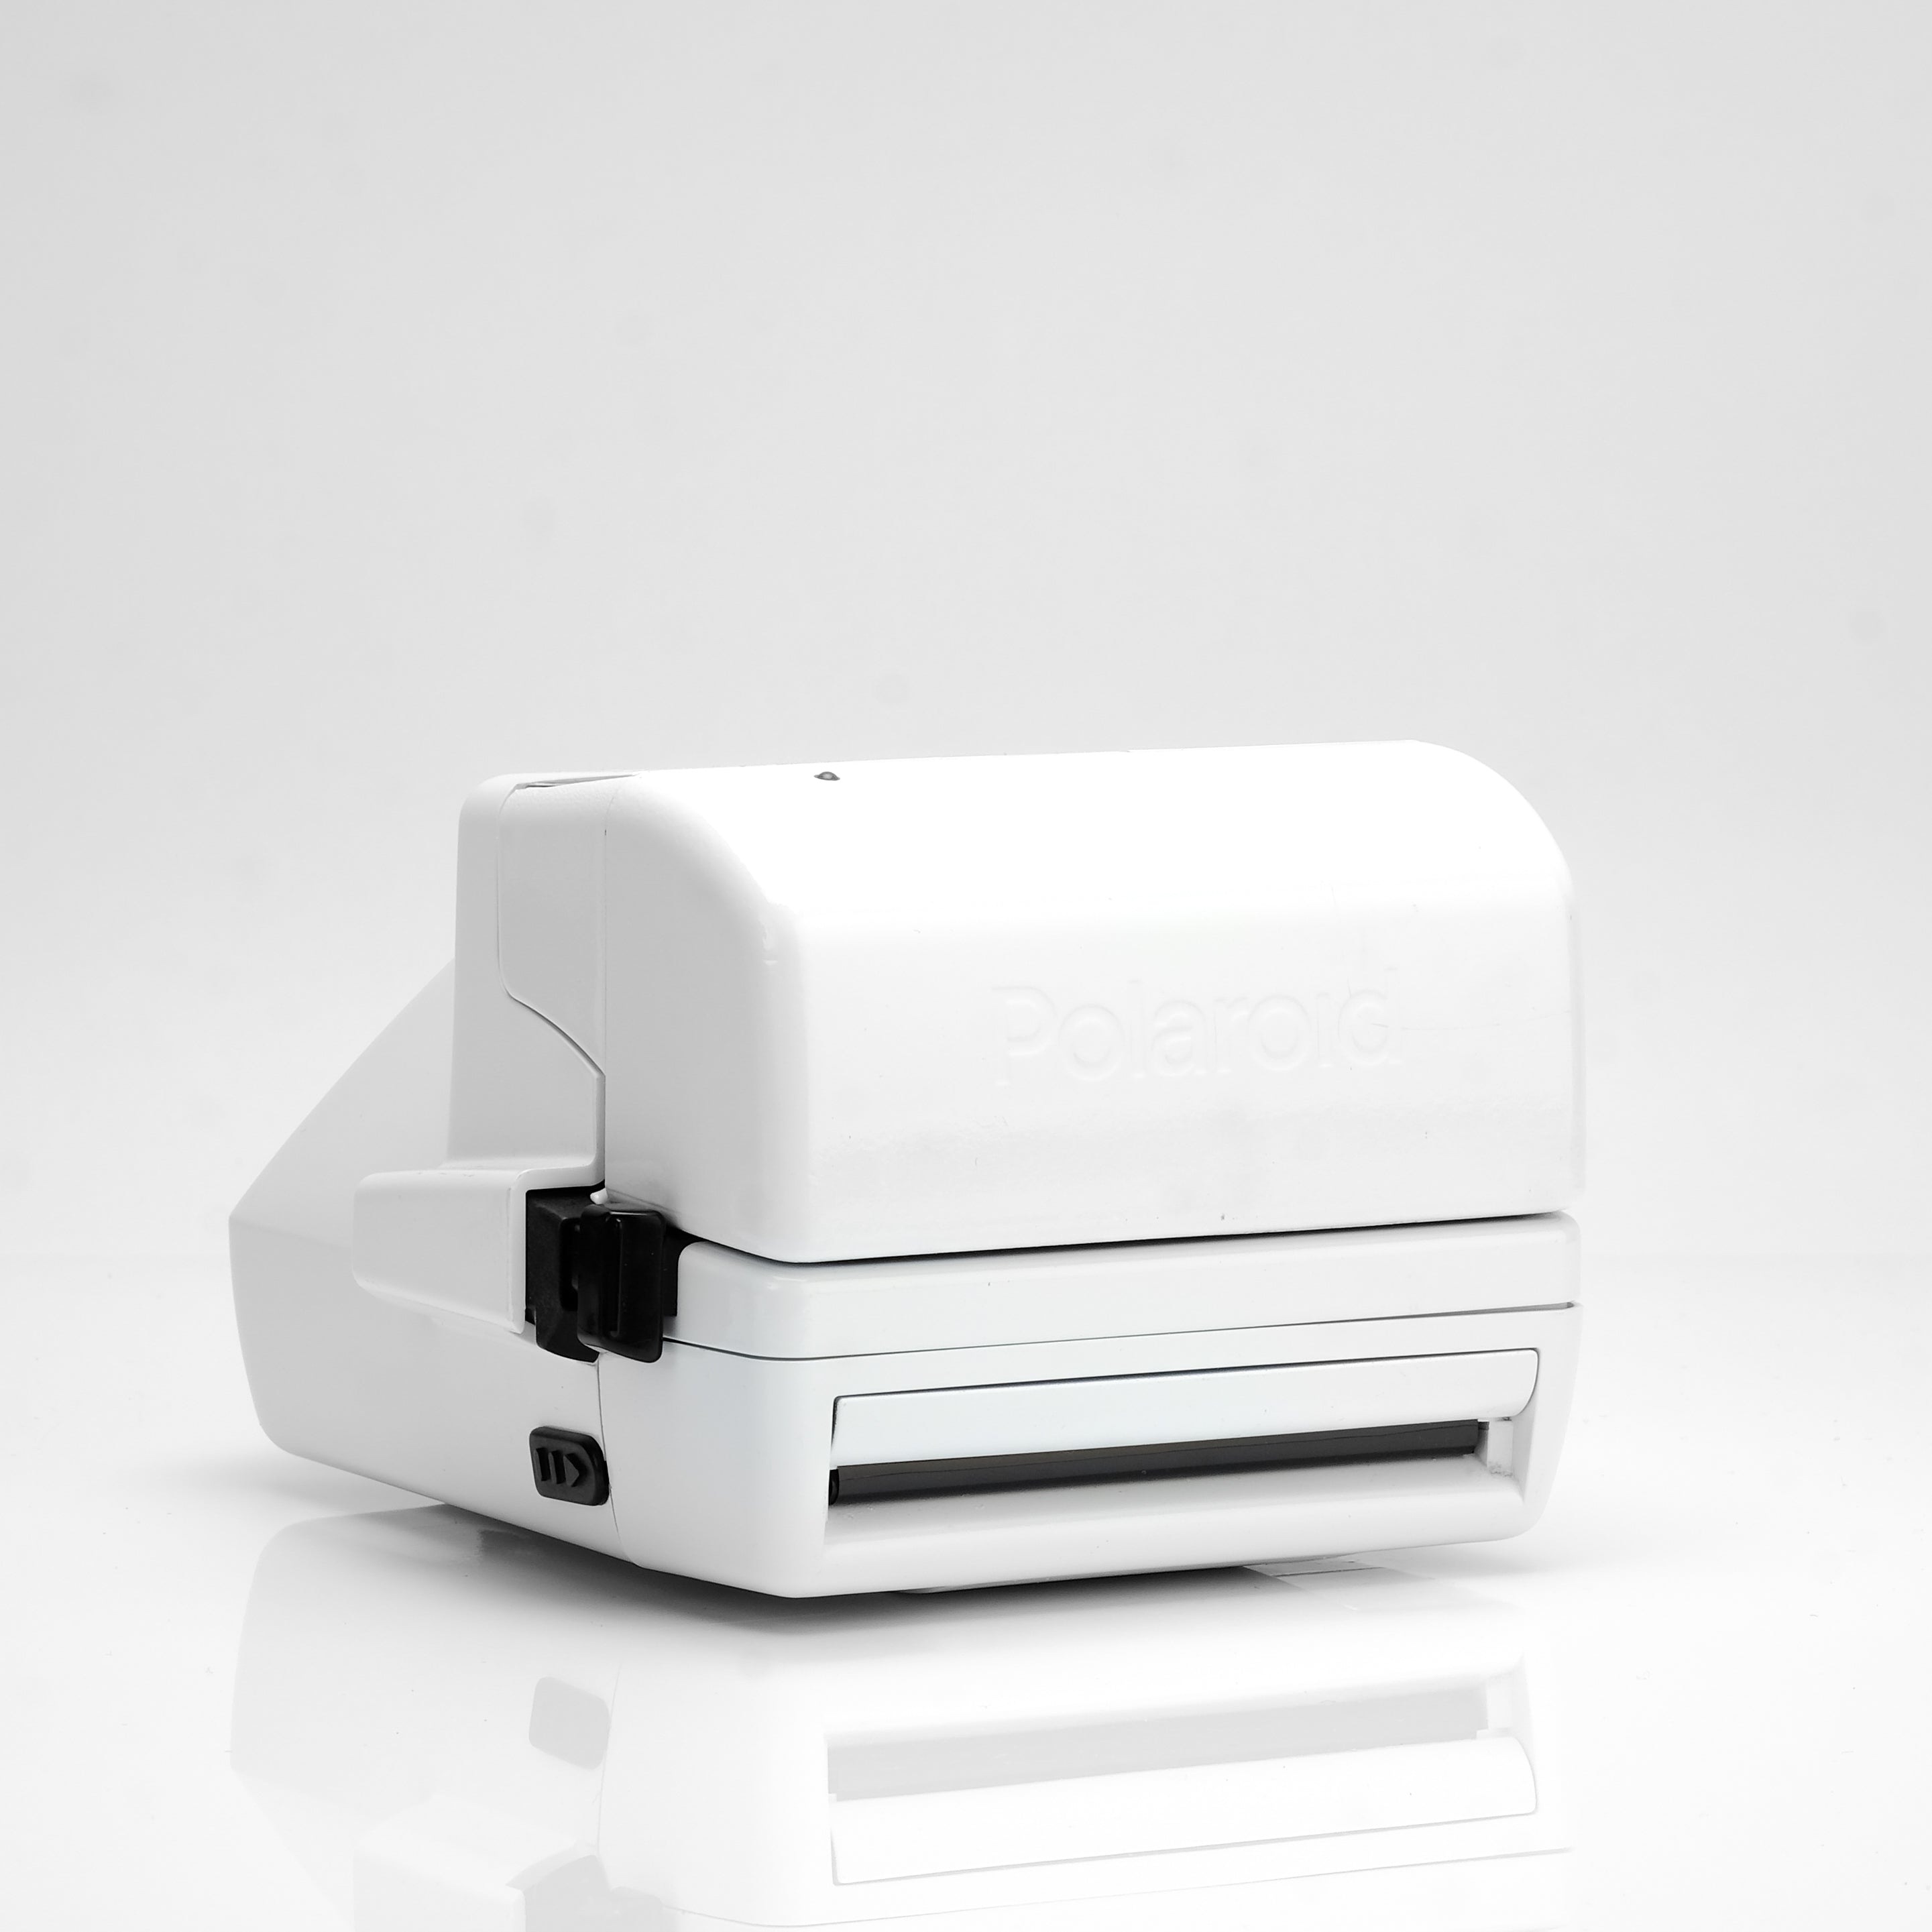 Polaroid 600 Autofocus White Instant Film Camera